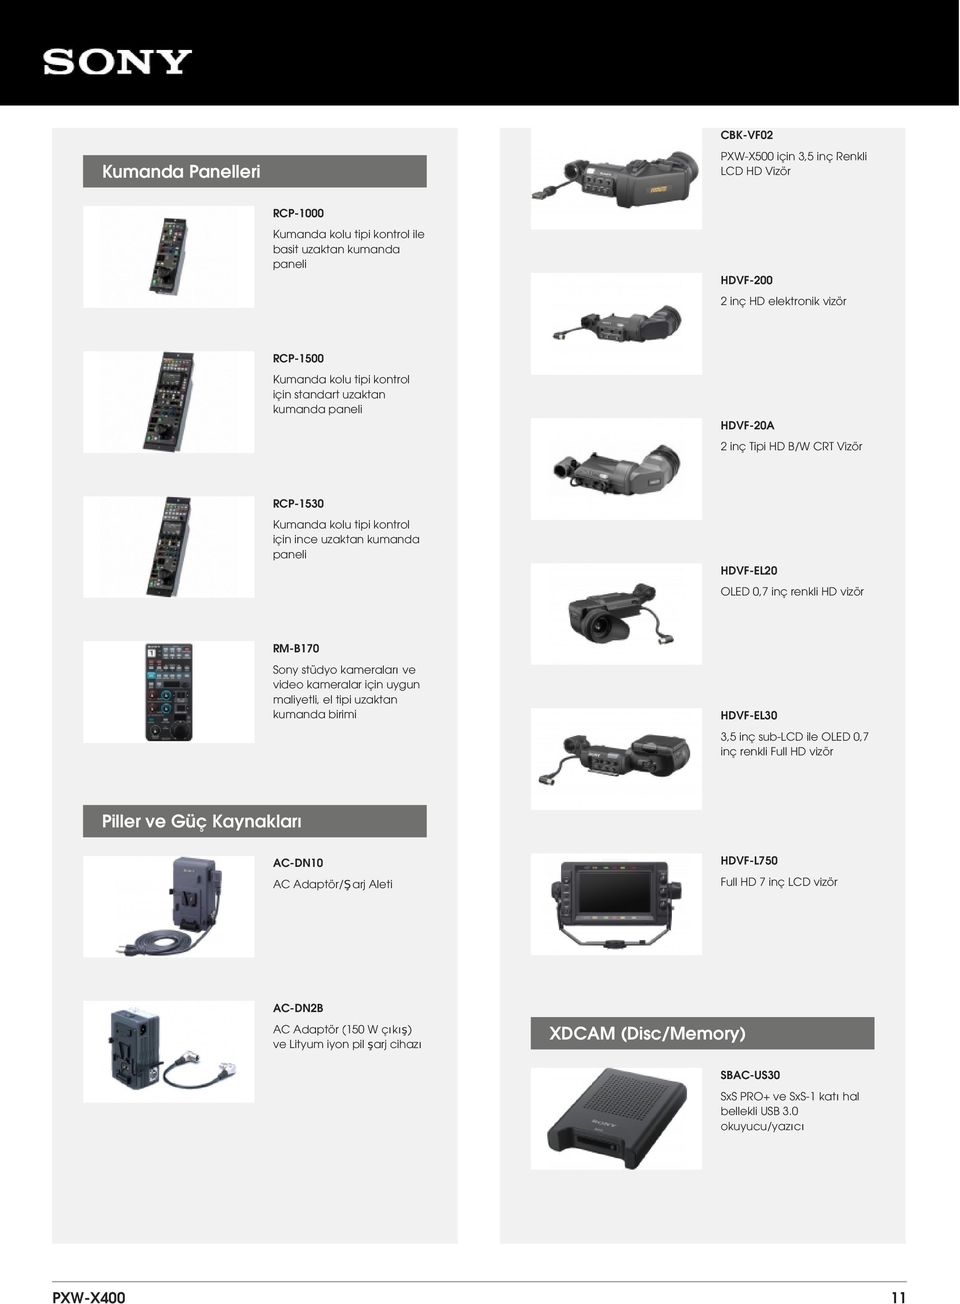 Sony stüdyo kameraları ve video kameralar için uygun maliyetli, el tipi uzaktan kumanda birimi HDVF-EL30 3,5 inç sub-lcd ile OLED 0,7 inç renkli Full HD vizör Piller ve Güç Kaynakları AC-DN10 AC